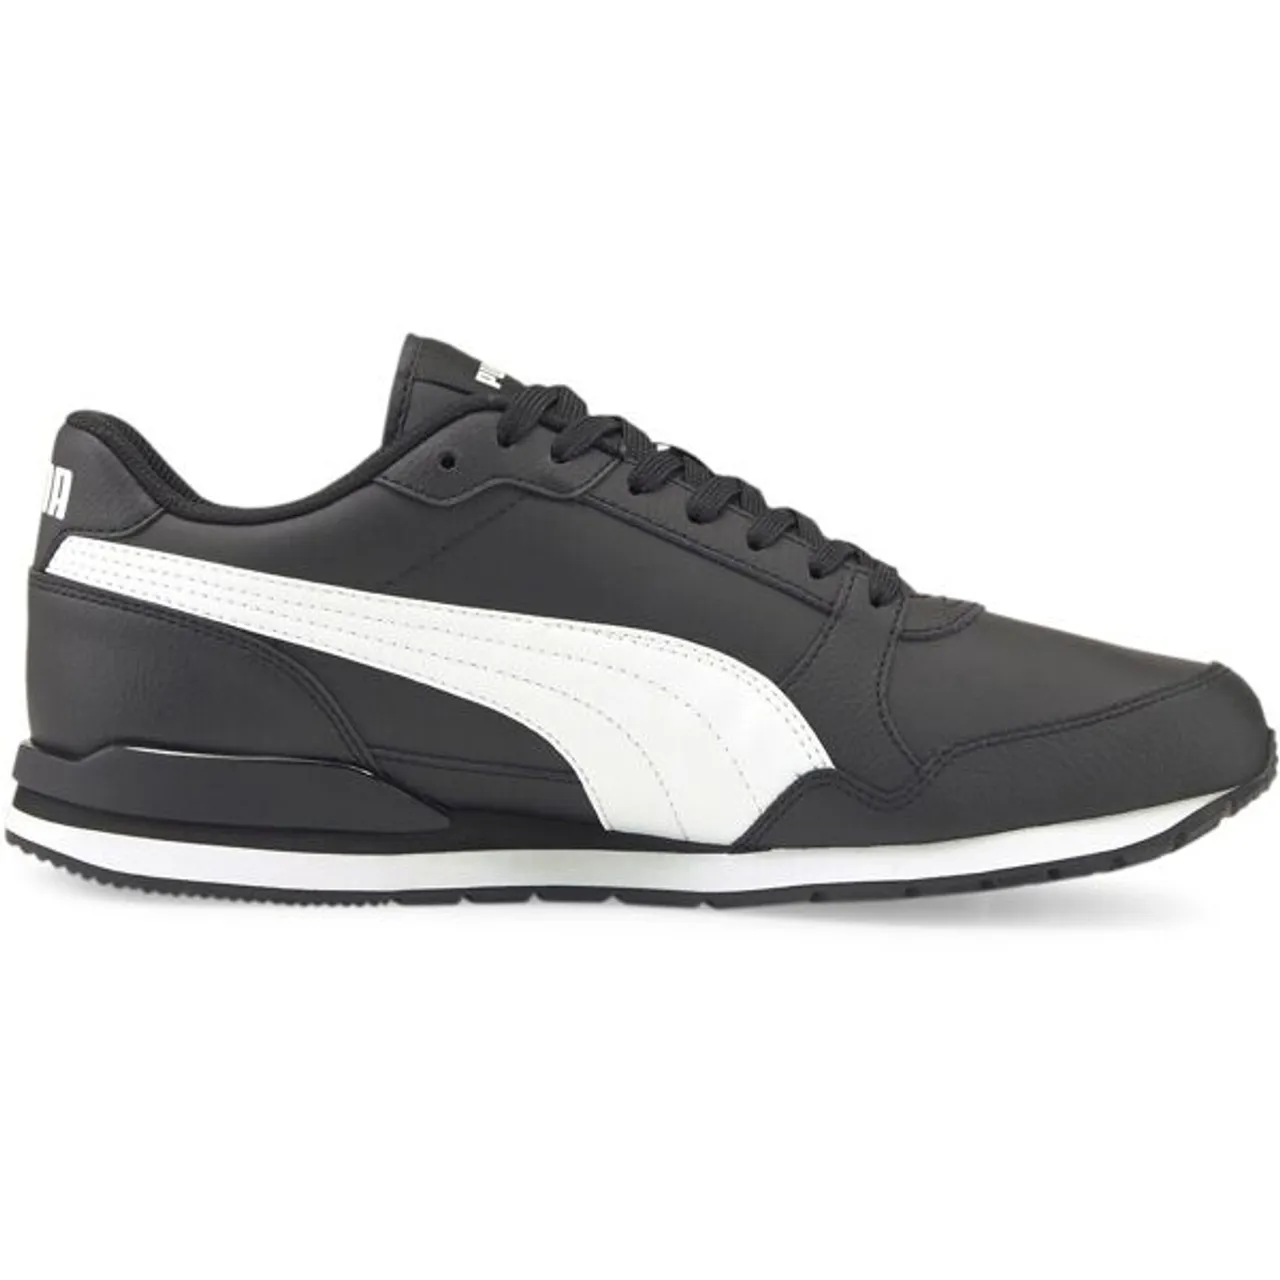 Sneaker PUMA "ST RUNNER V3 L" Gr. 45, schwarz-weiß (puma black, puma white) Schuhe Puma